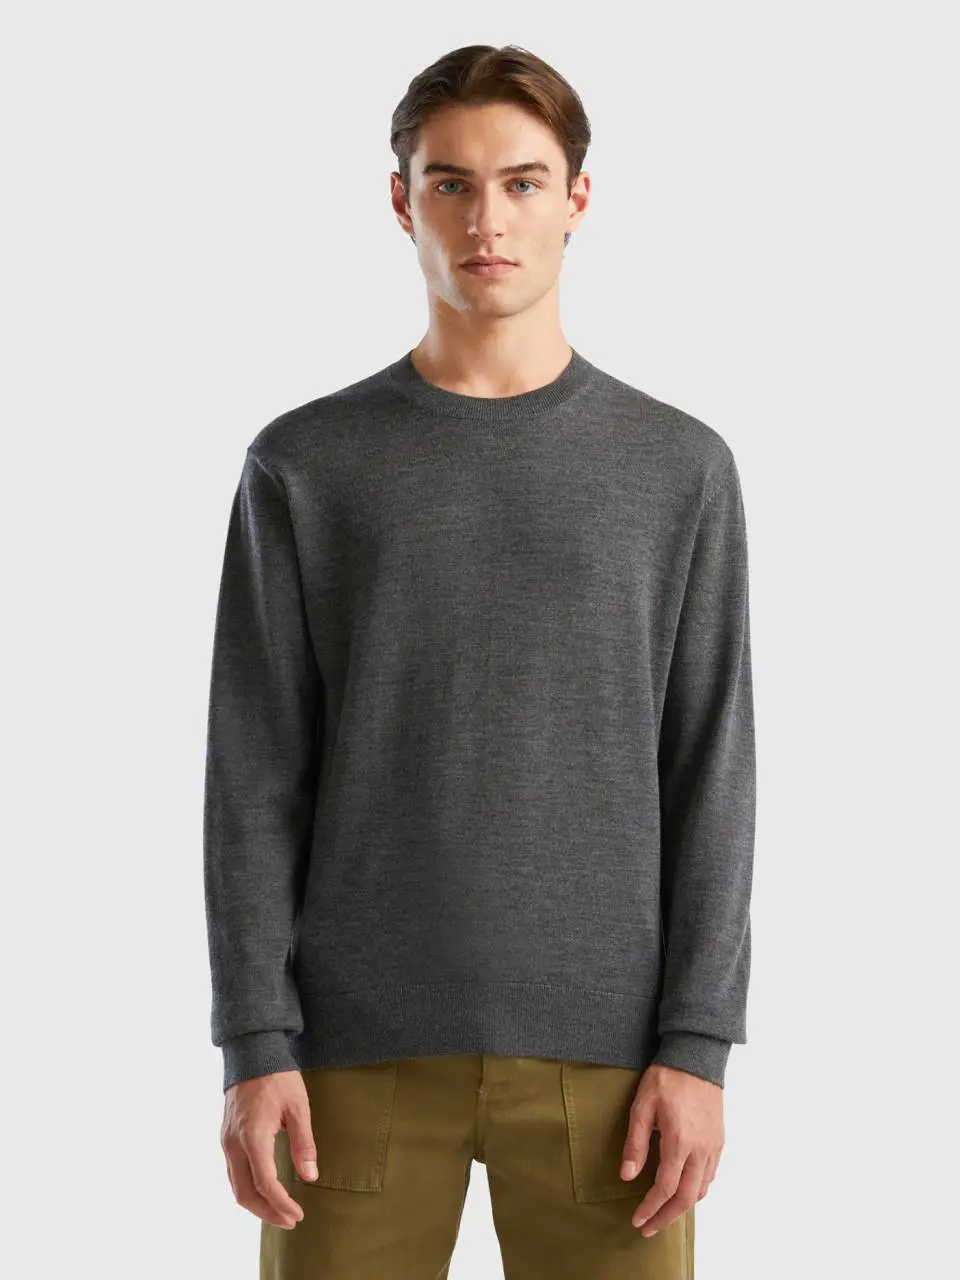 Benetton dark gray sweater in pure merino wool. 1